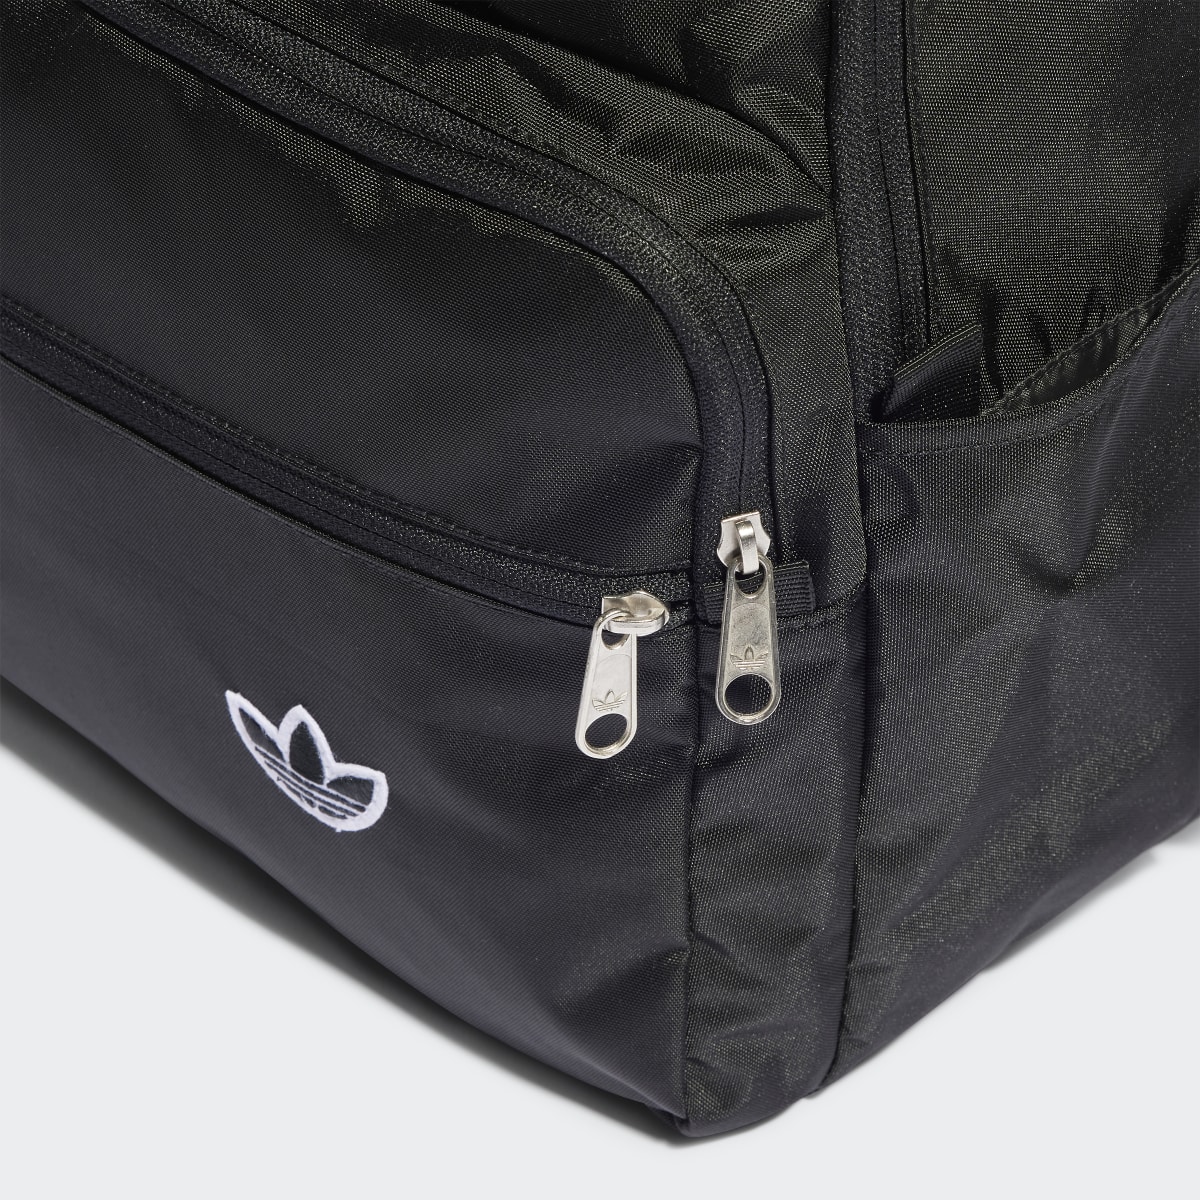 Adidas Premium Essentials Backpack. 6